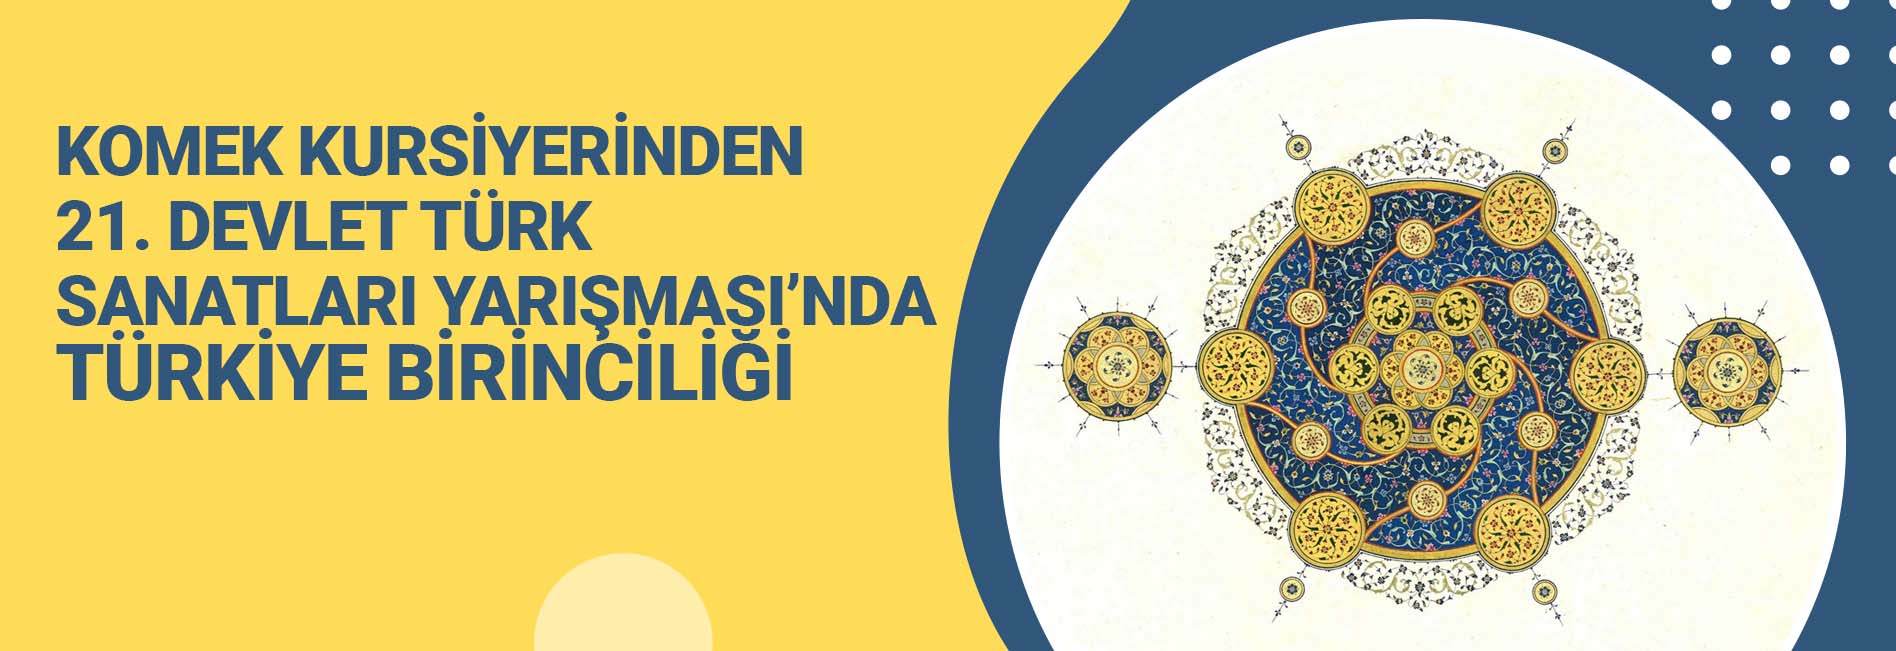 KOMEK Kursiyerinden 21. Devlet Türk Sanatları Yarışması’nda Türkiye Birinciliği